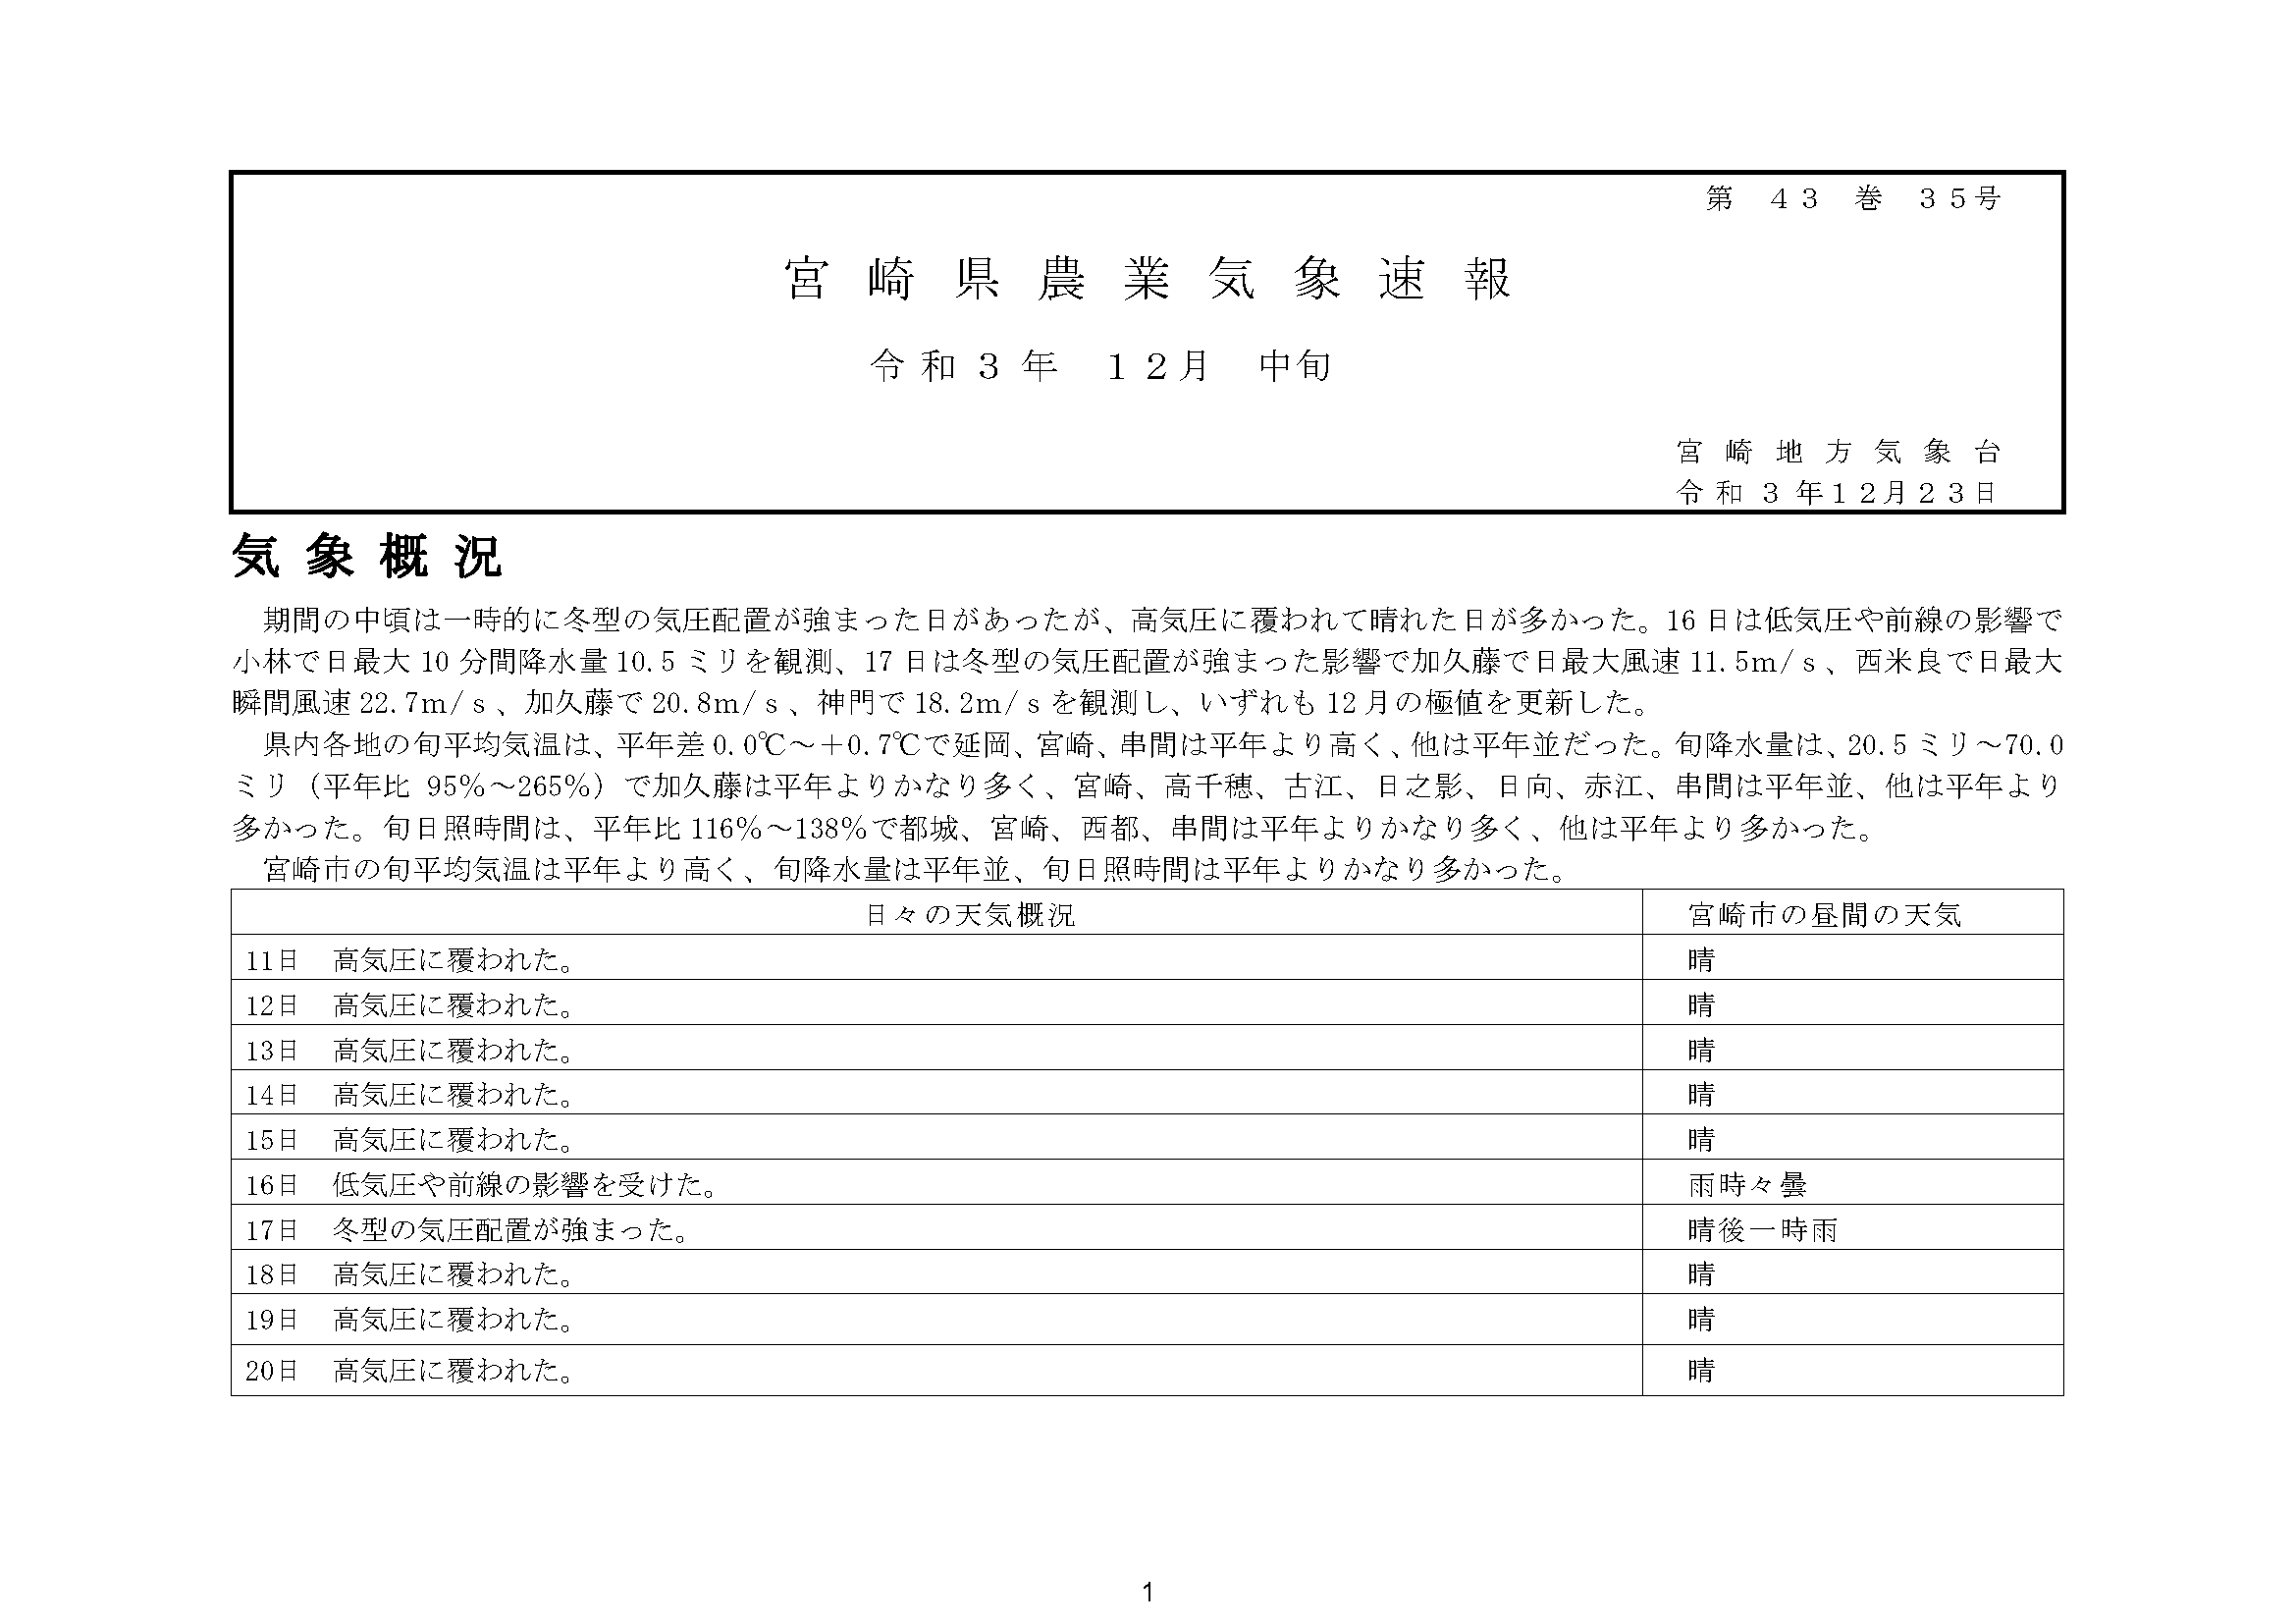 宮崎県農業気象速報令和3年10月中旬PDF